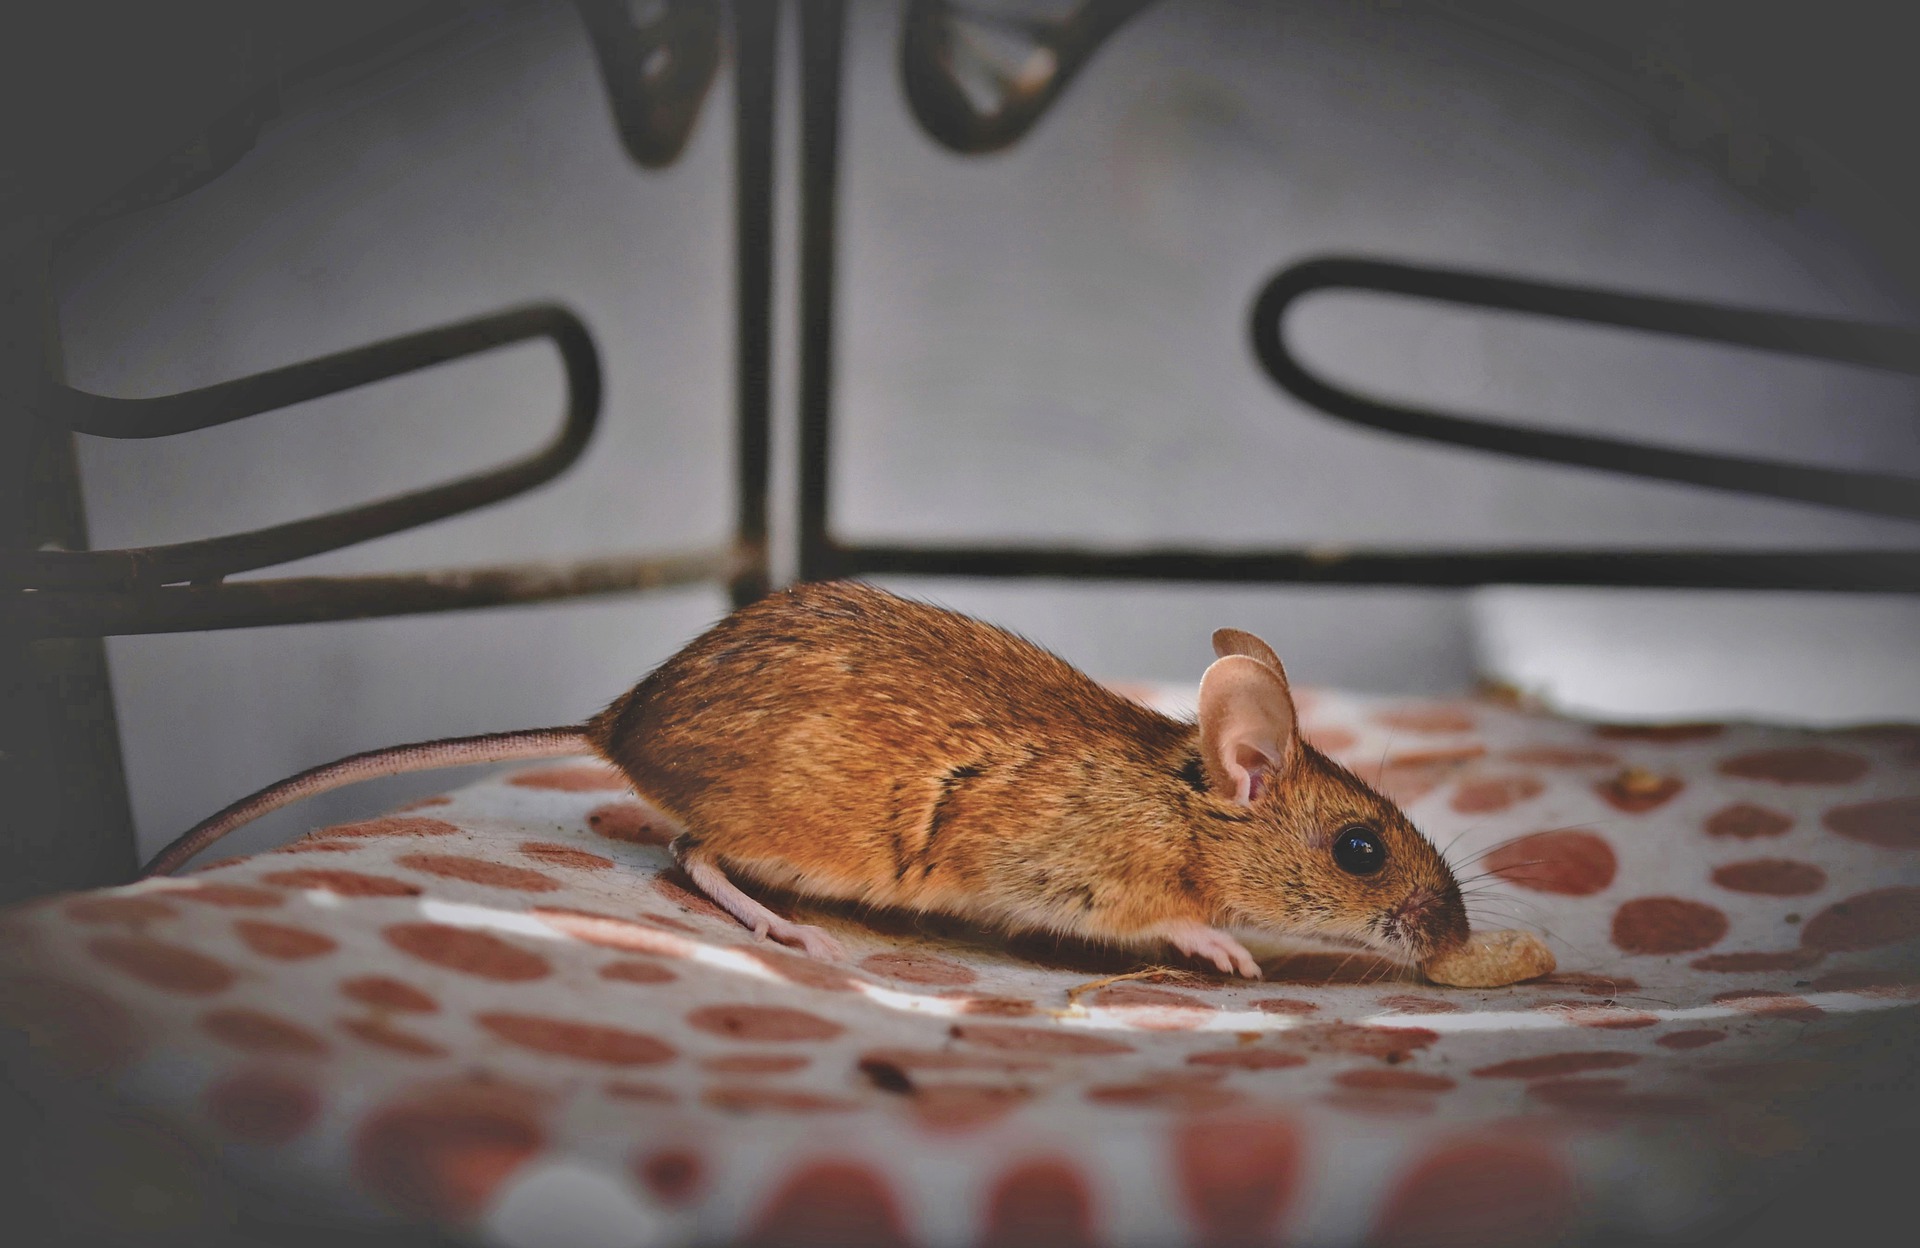 Bien que la souris soit omnivore, il est plus sûr de lui donner une alimentation complète qui corresponde au mieux à ses besoins.